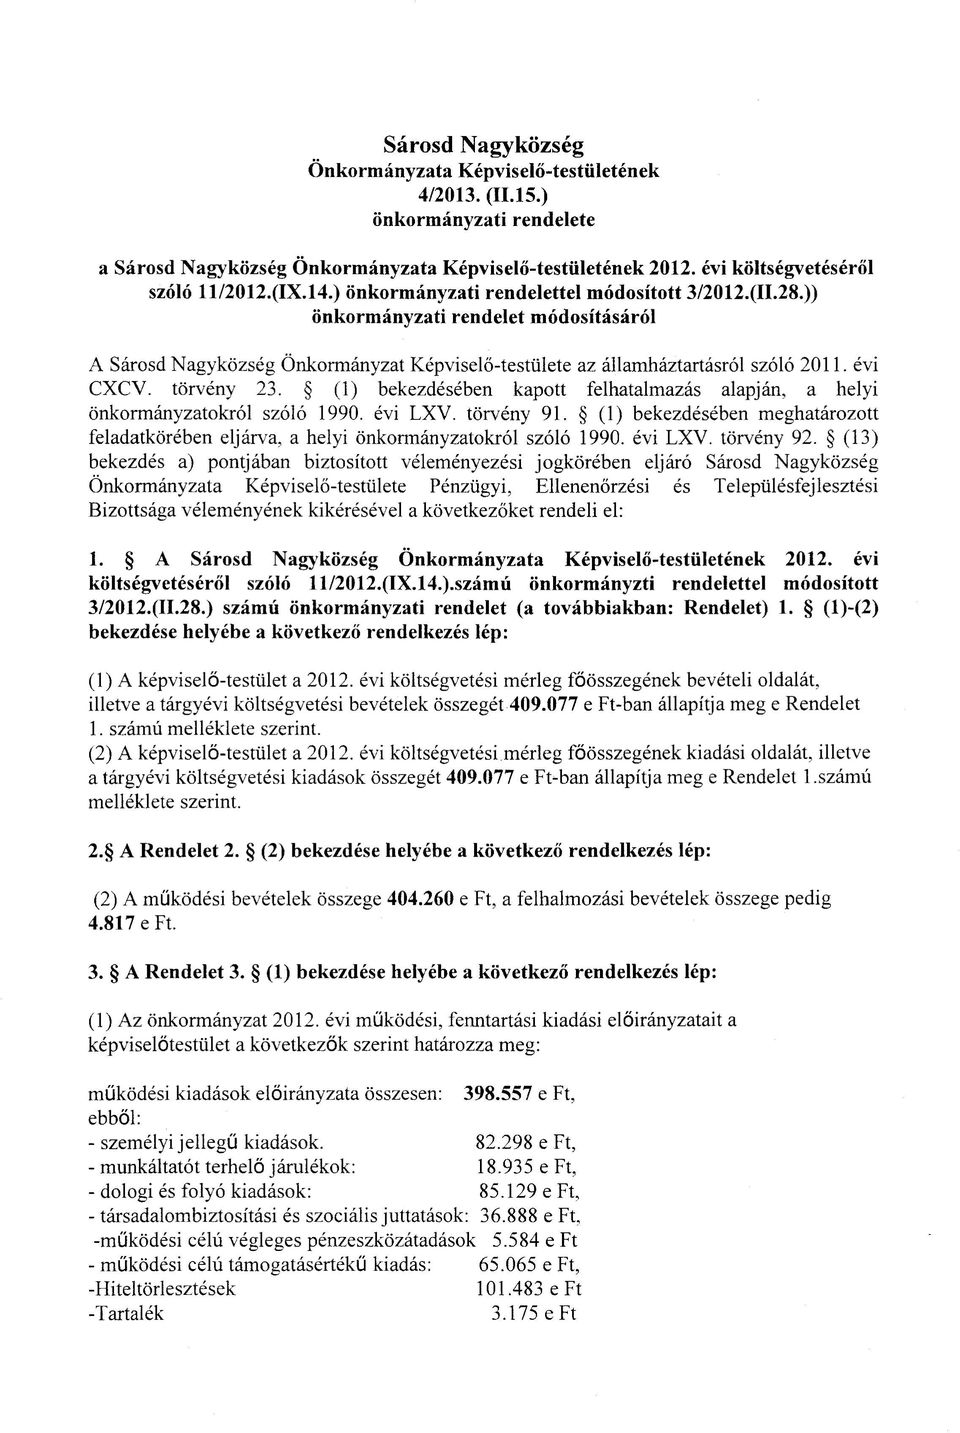 torveny 23. (1) bekezdeseben kapott felhatalmazas alapjan, a helyi onkormanyzatokrol szolo 1990. evi LXV. torveny 91.